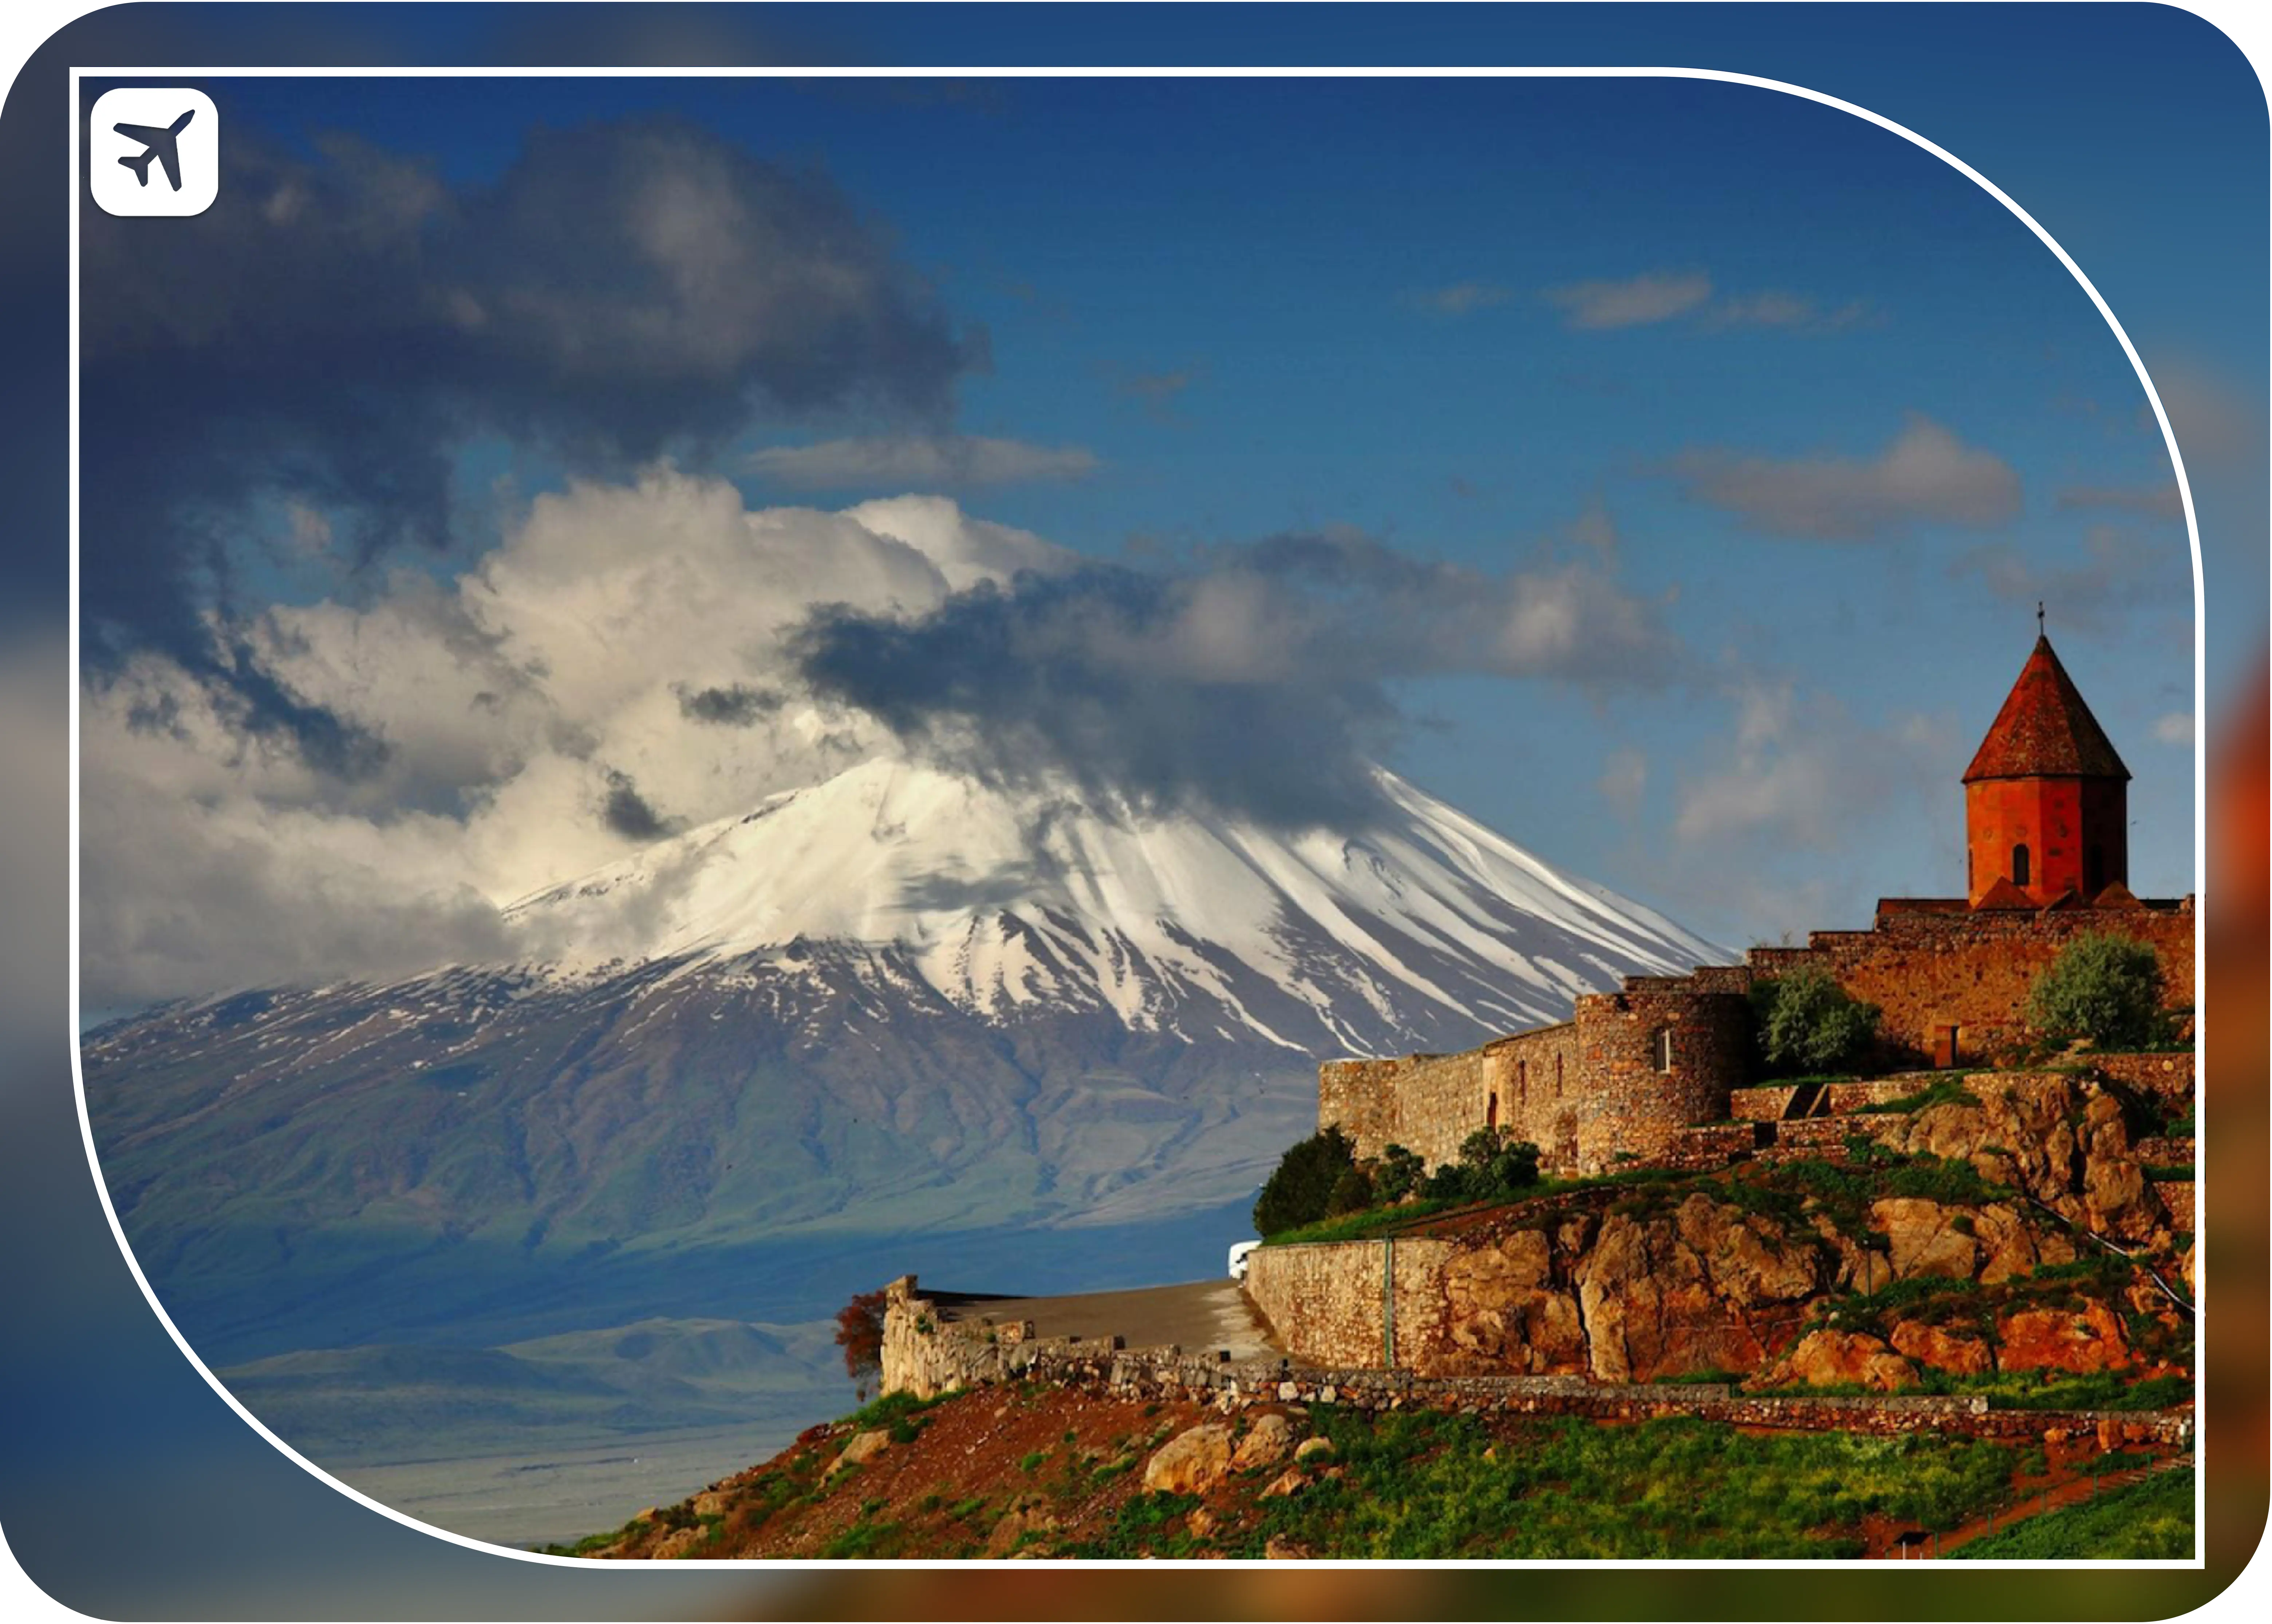 تور ارمنستان